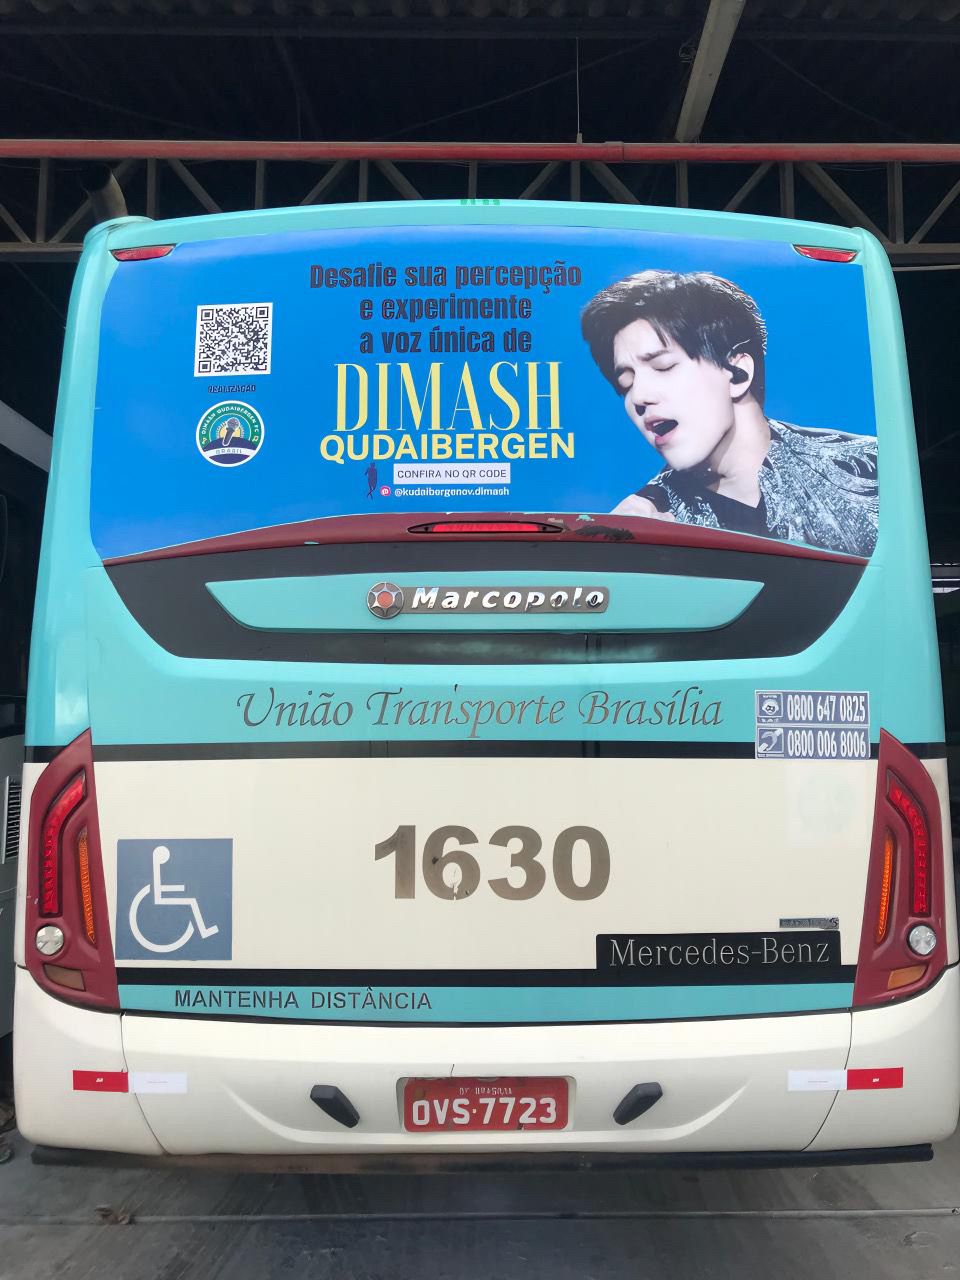 Автобусы с изображением Димаша появились в двух главных городах Бразилии